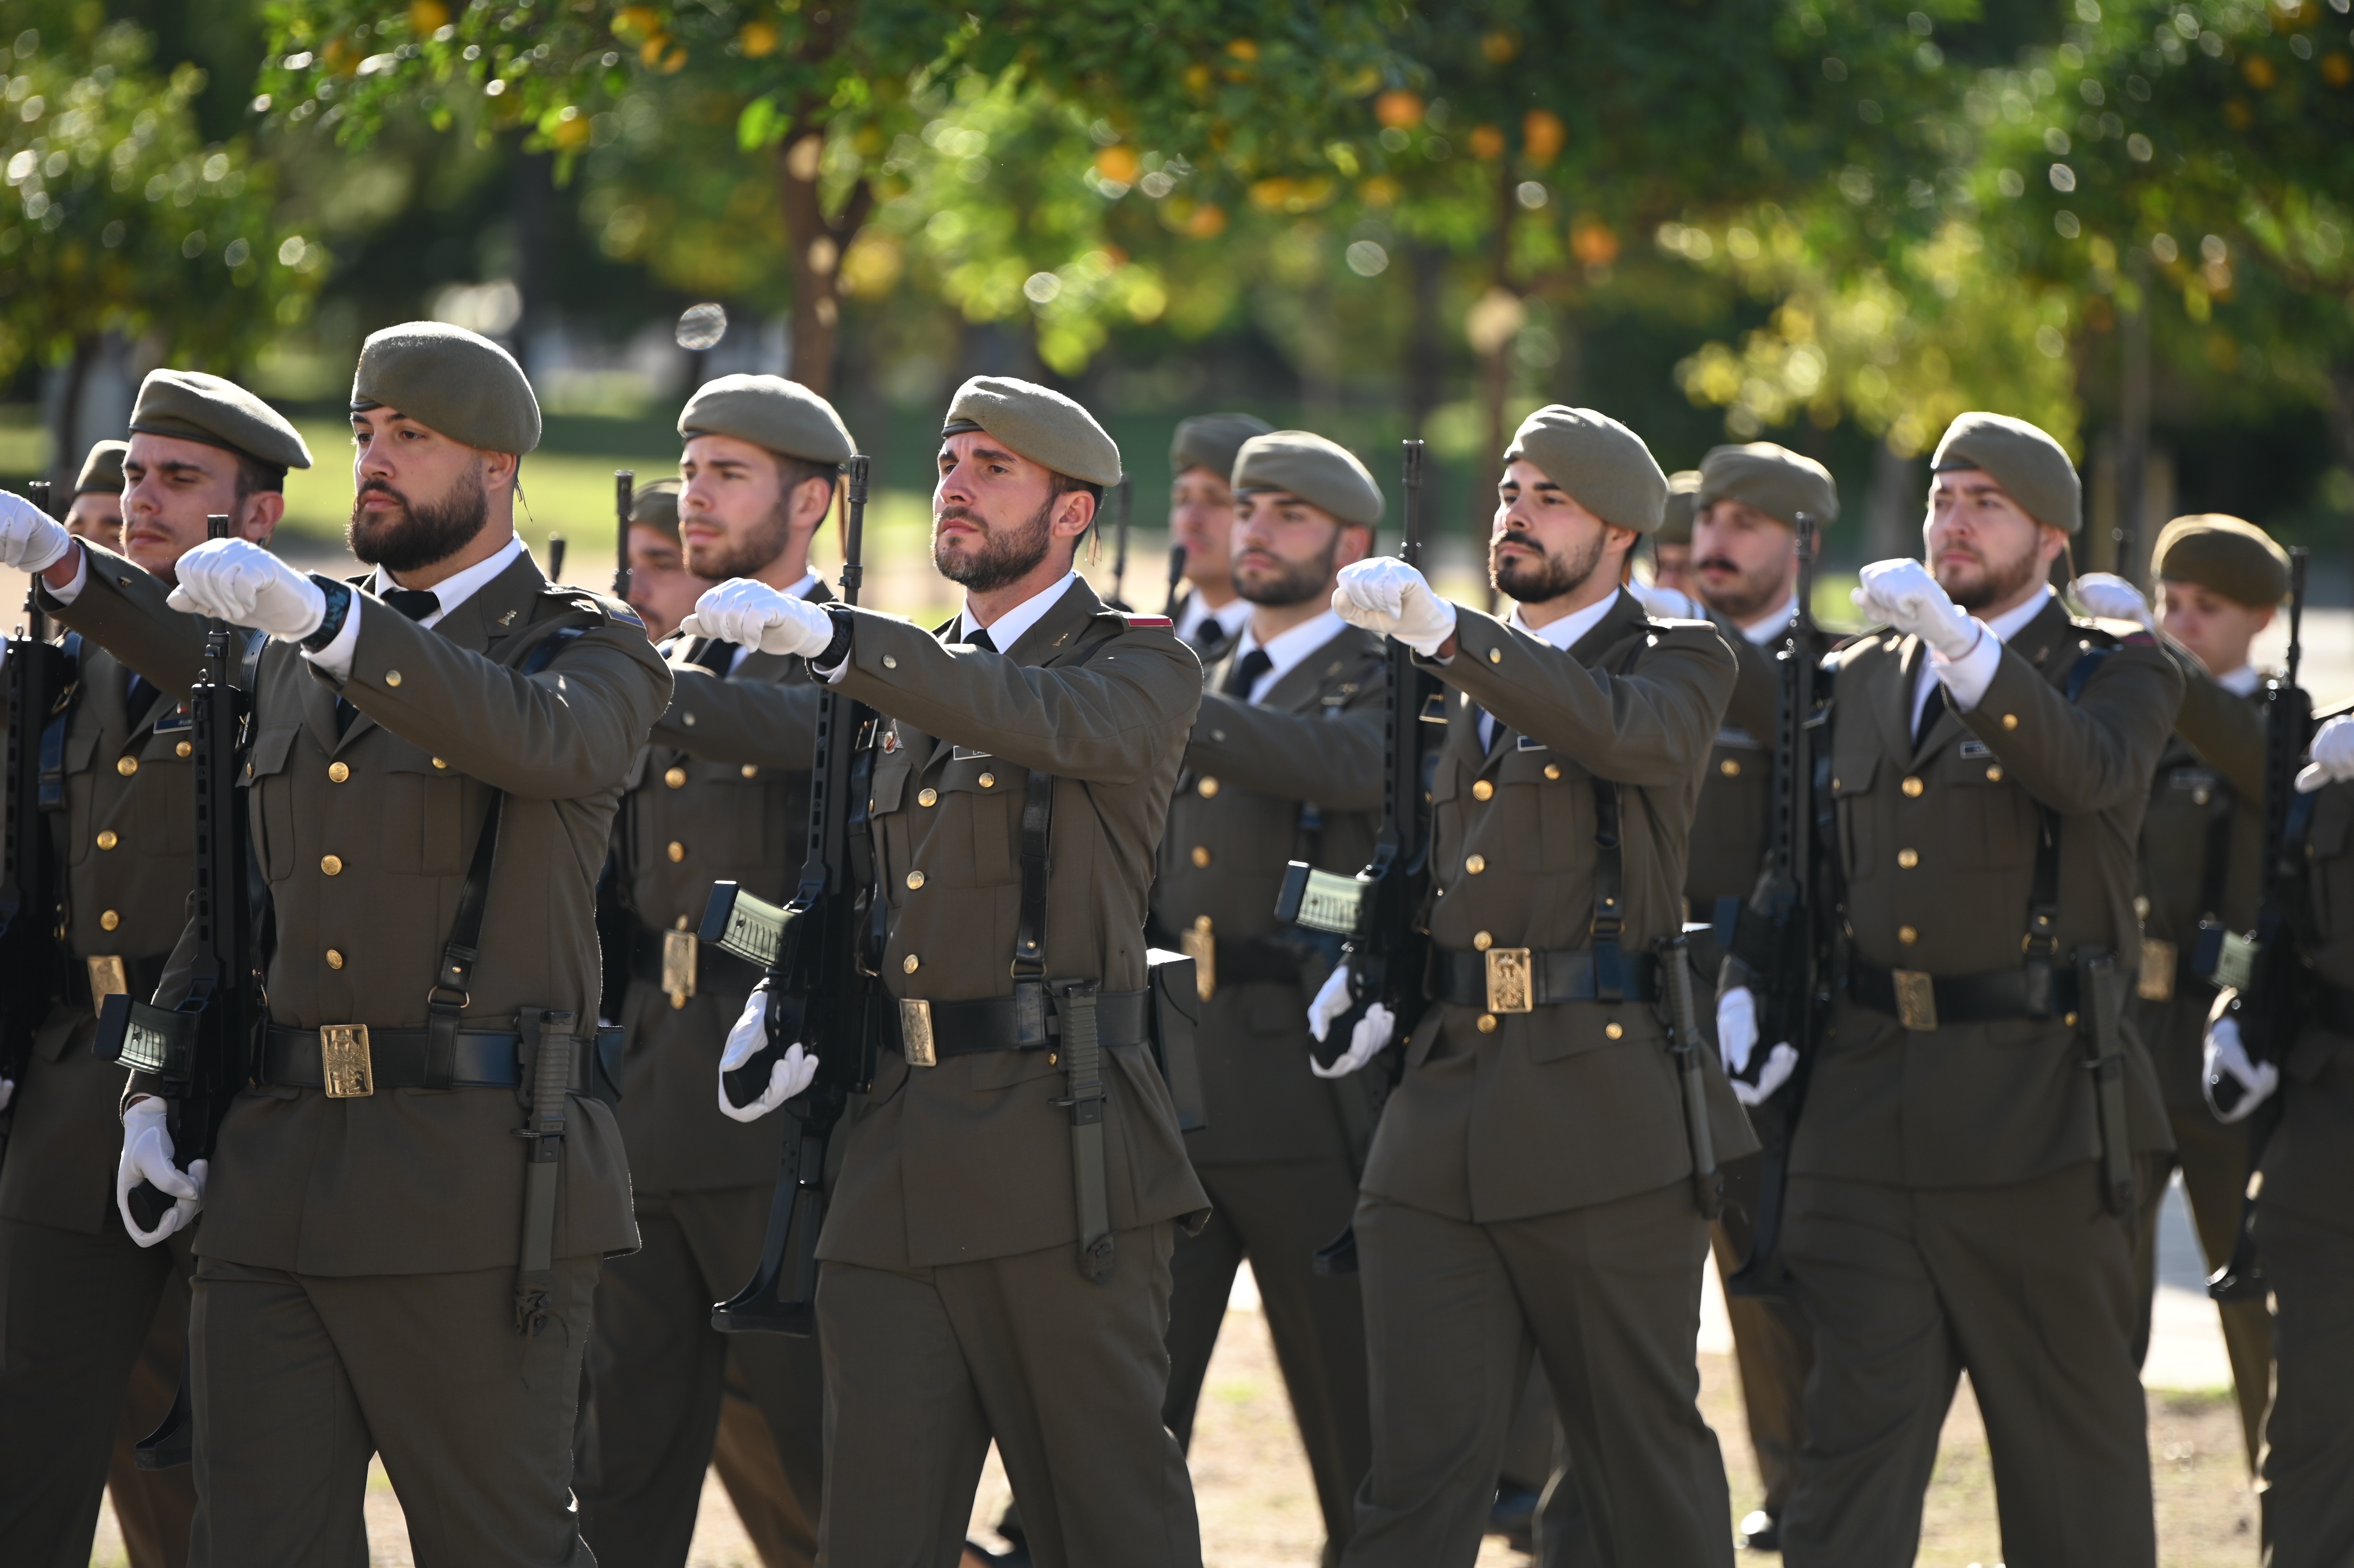 Un ex teniente coronel admite que la derecha española conspira en el ejército